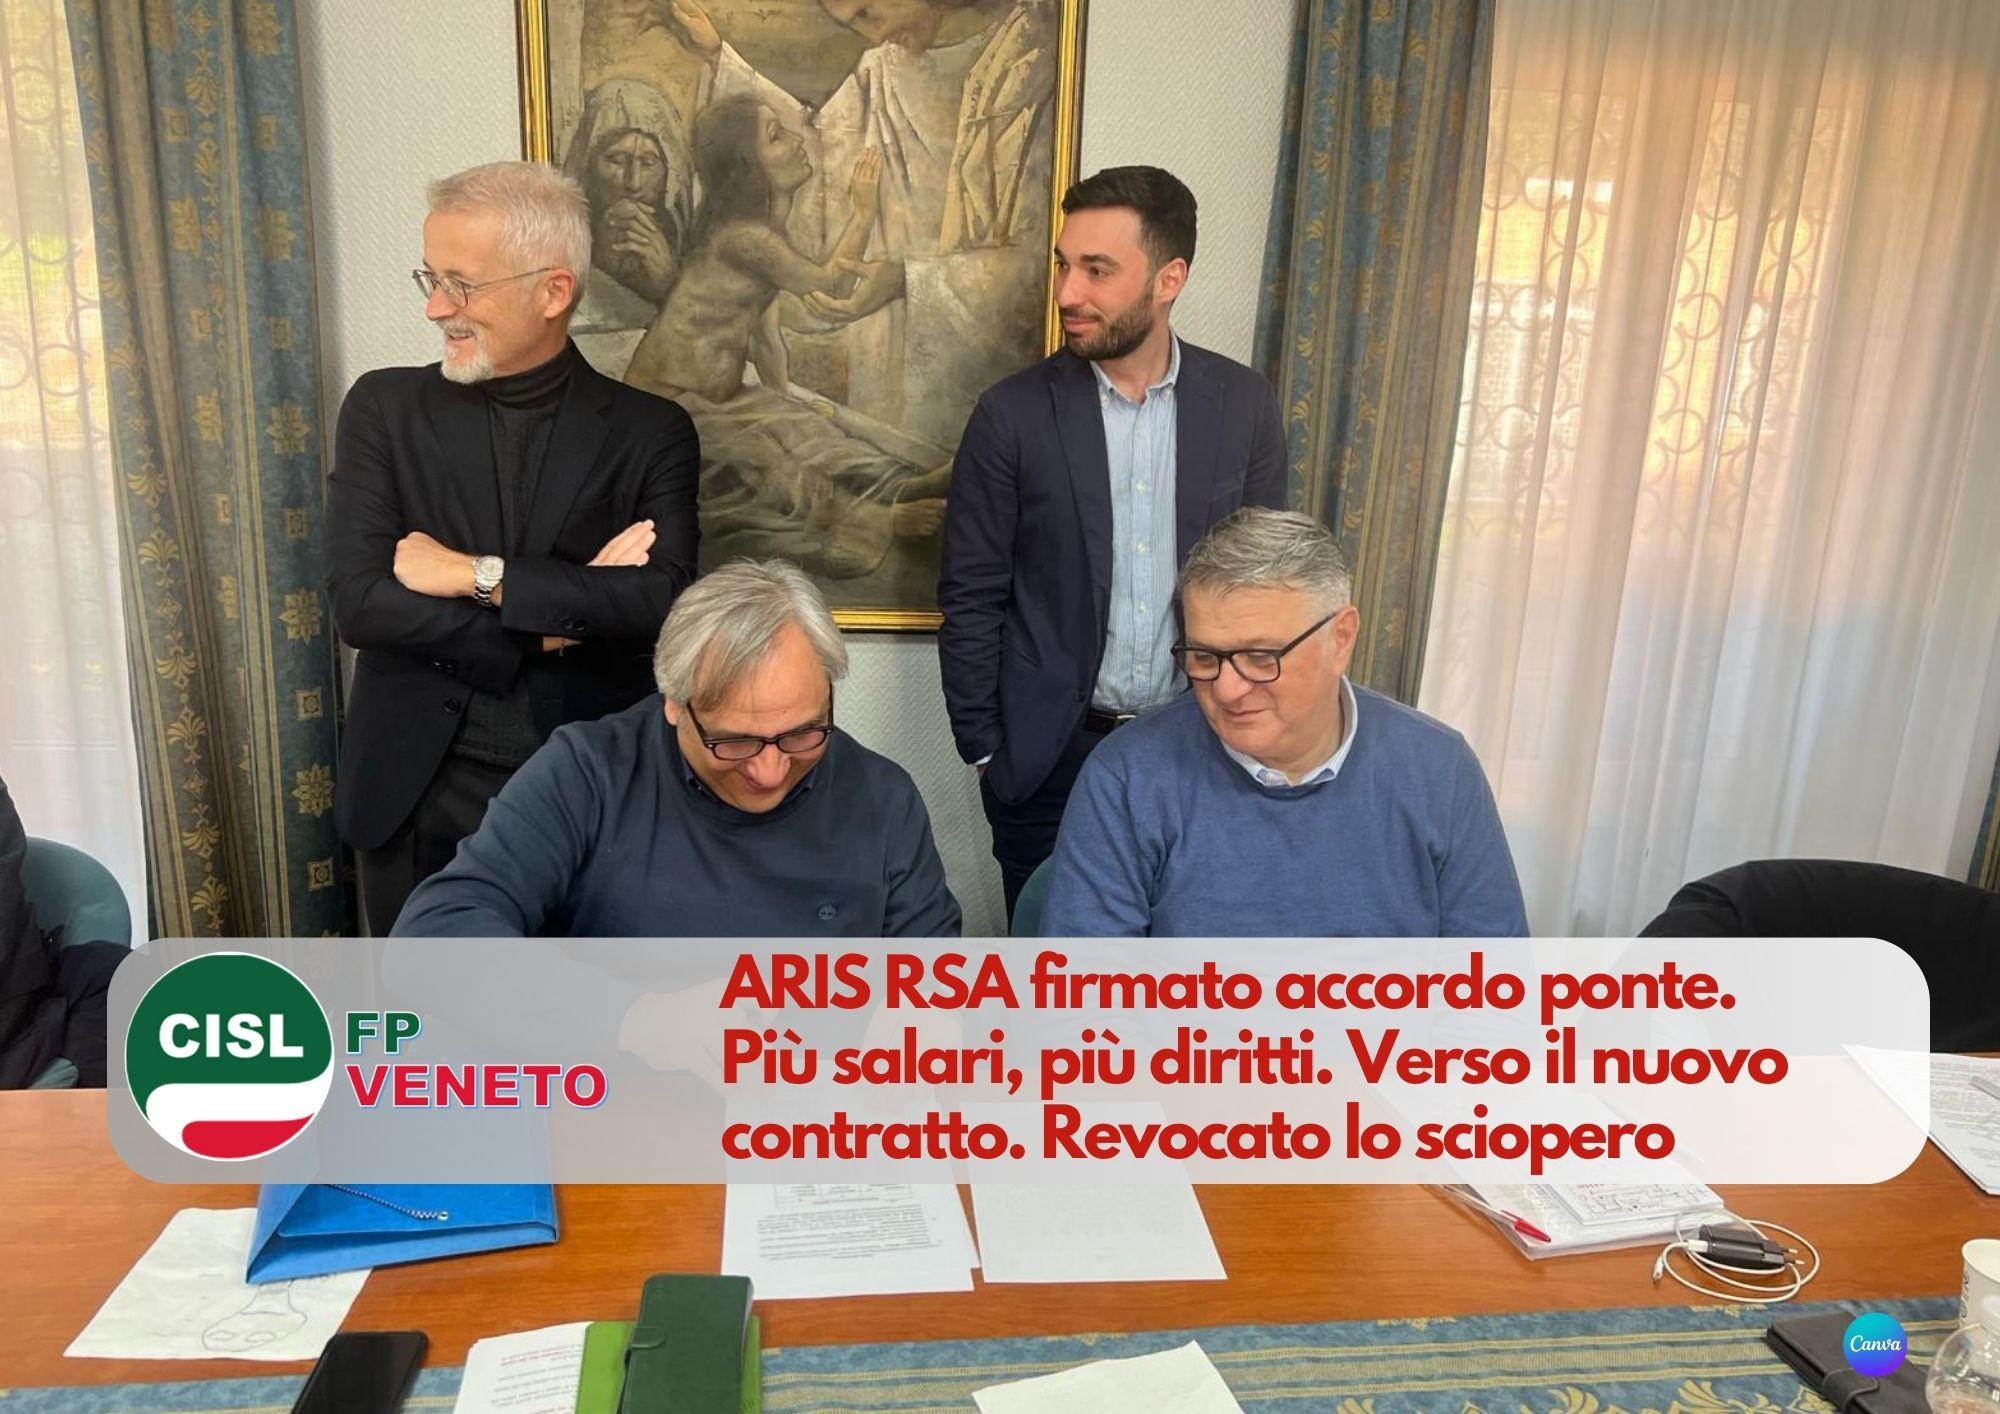 CISL FP Veneto. ARIS RSA firmato accordo ponte. Più salari, più diritti. Verso il nuovo contratto